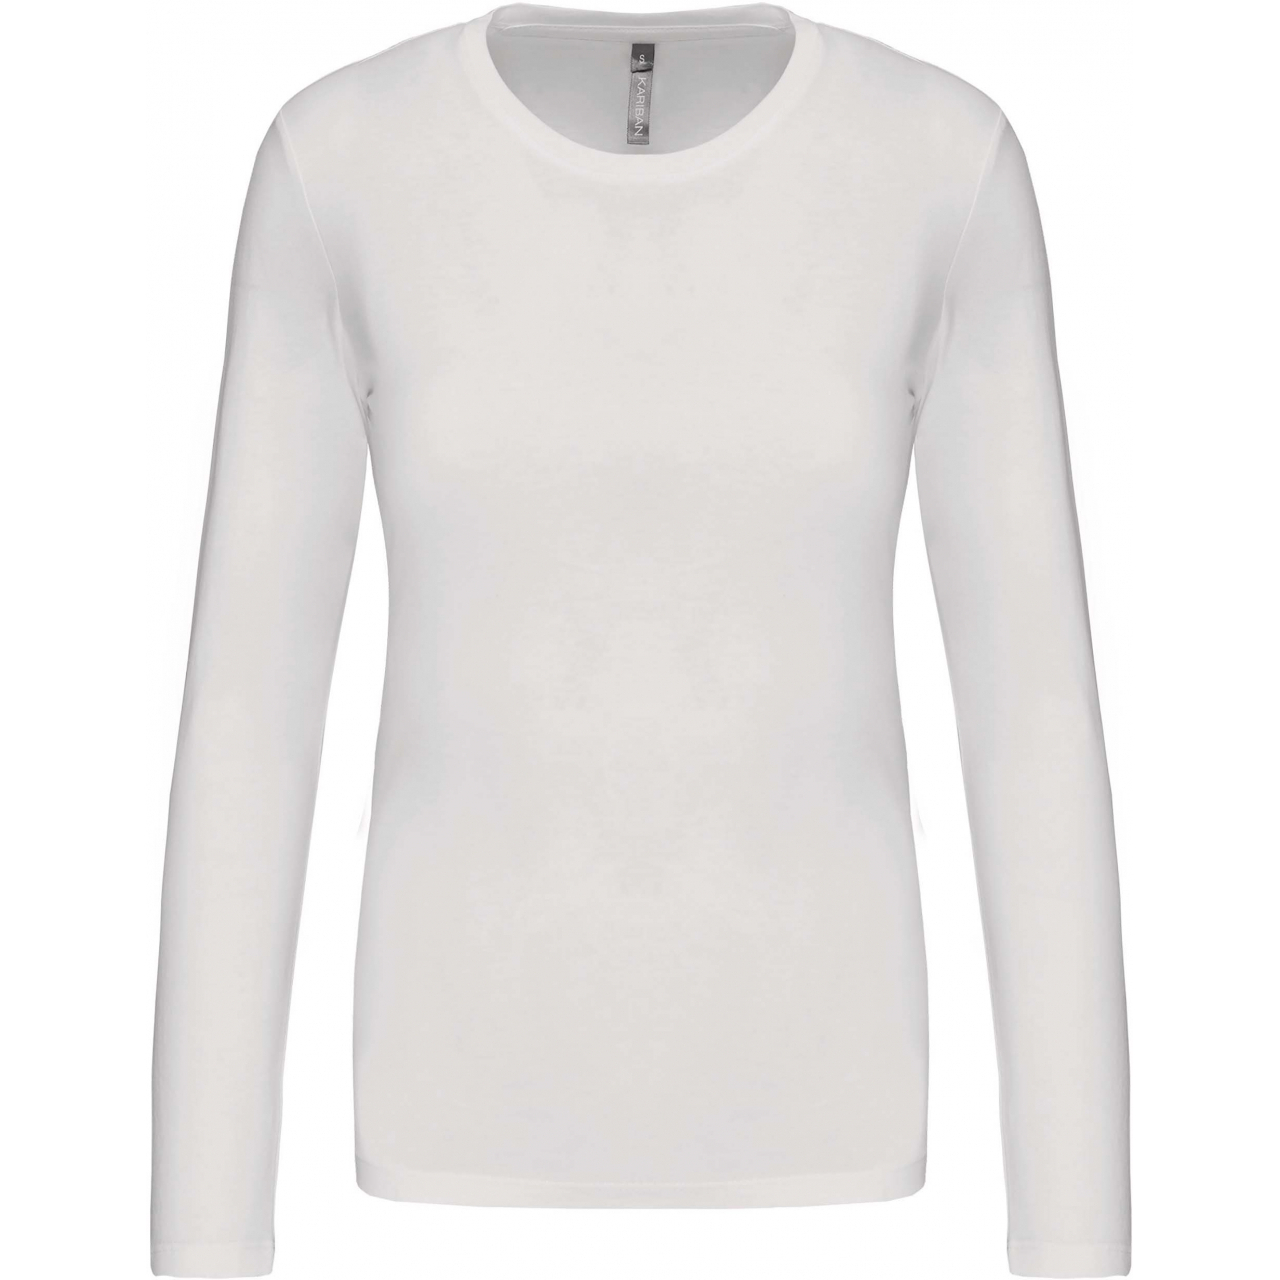 Dámské tričko Kariban dlouhý rukáv - bílé, XL